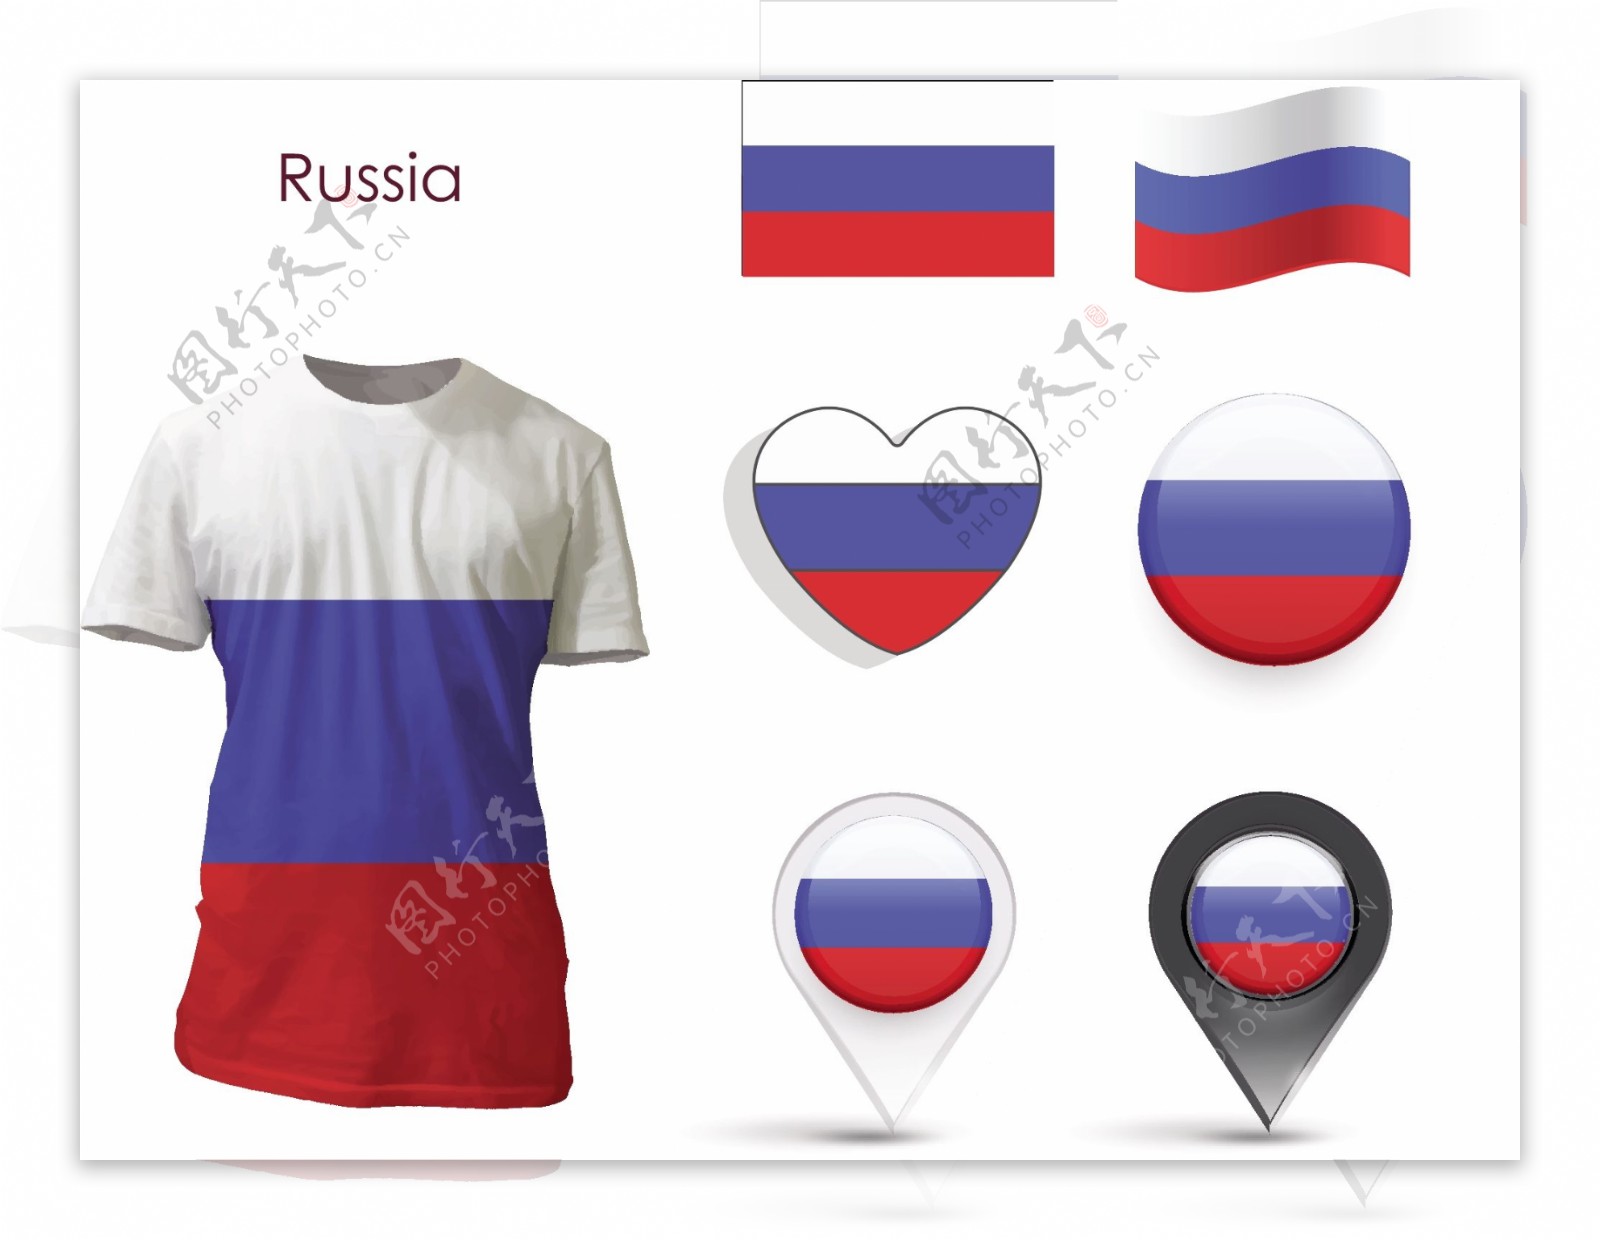 俄罗斯国旗元素t恤衫矢量素材